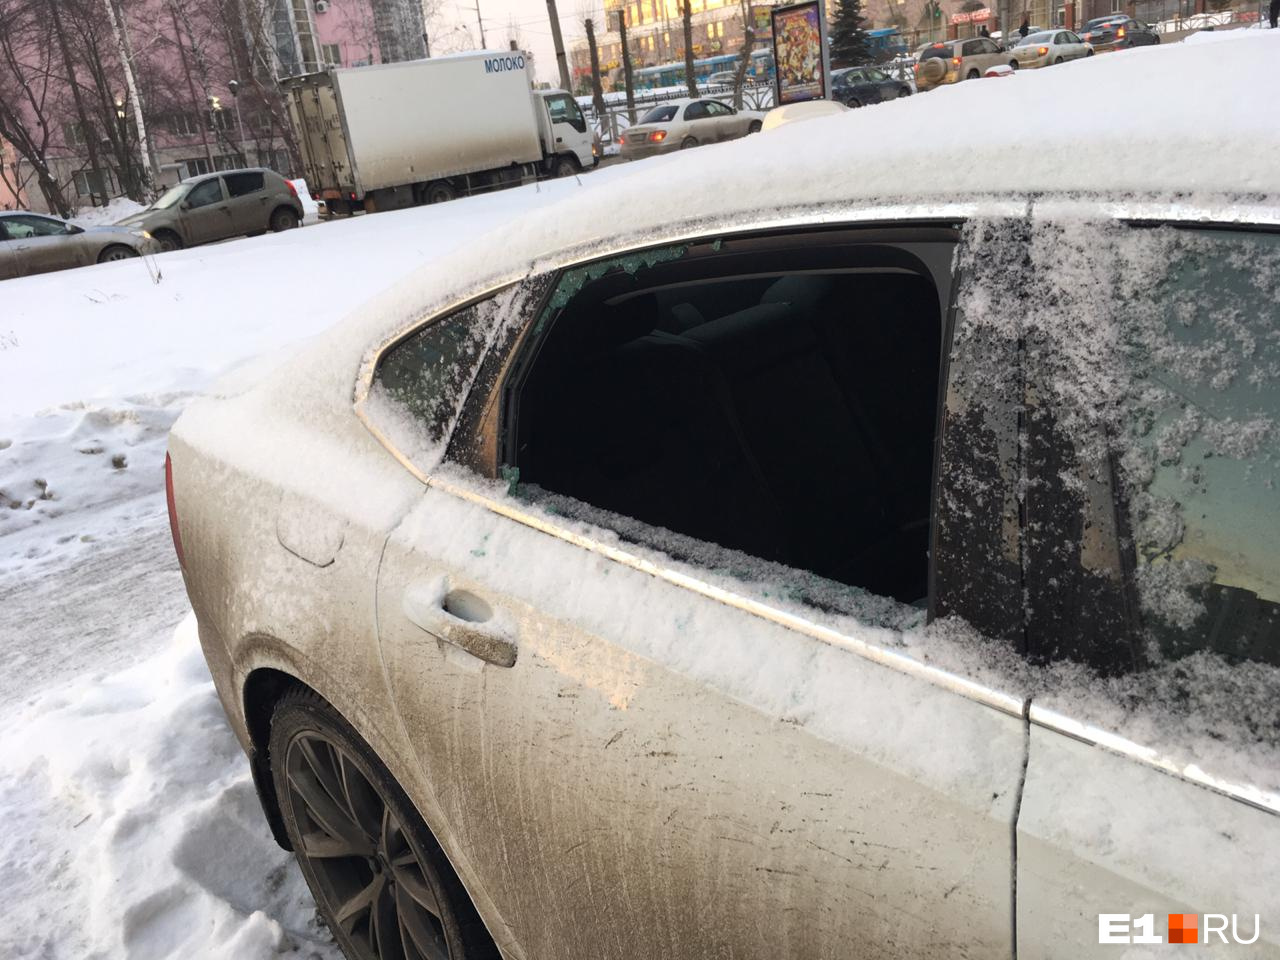 Утром 6 февраля Марина обнаружила разбитое окно в своей машине